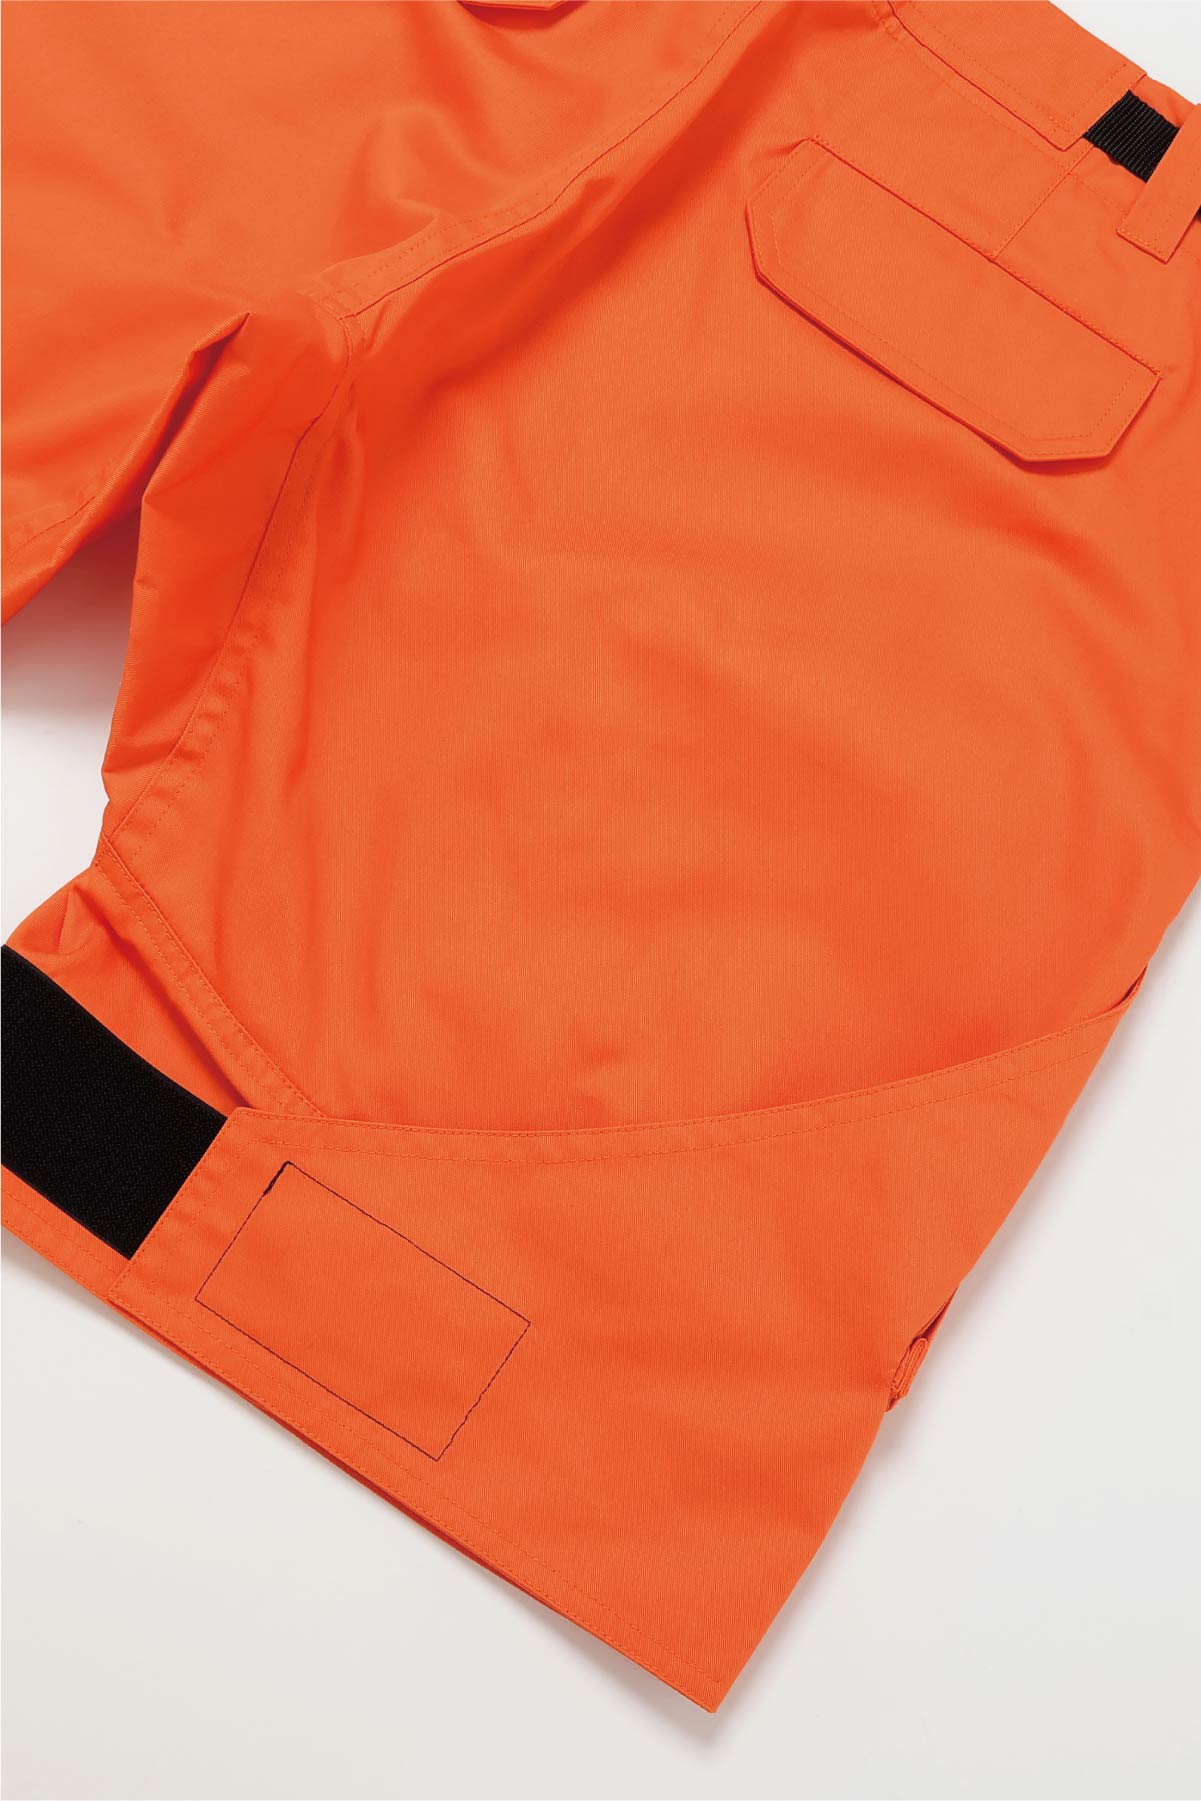 Flap Shorts【Orange】